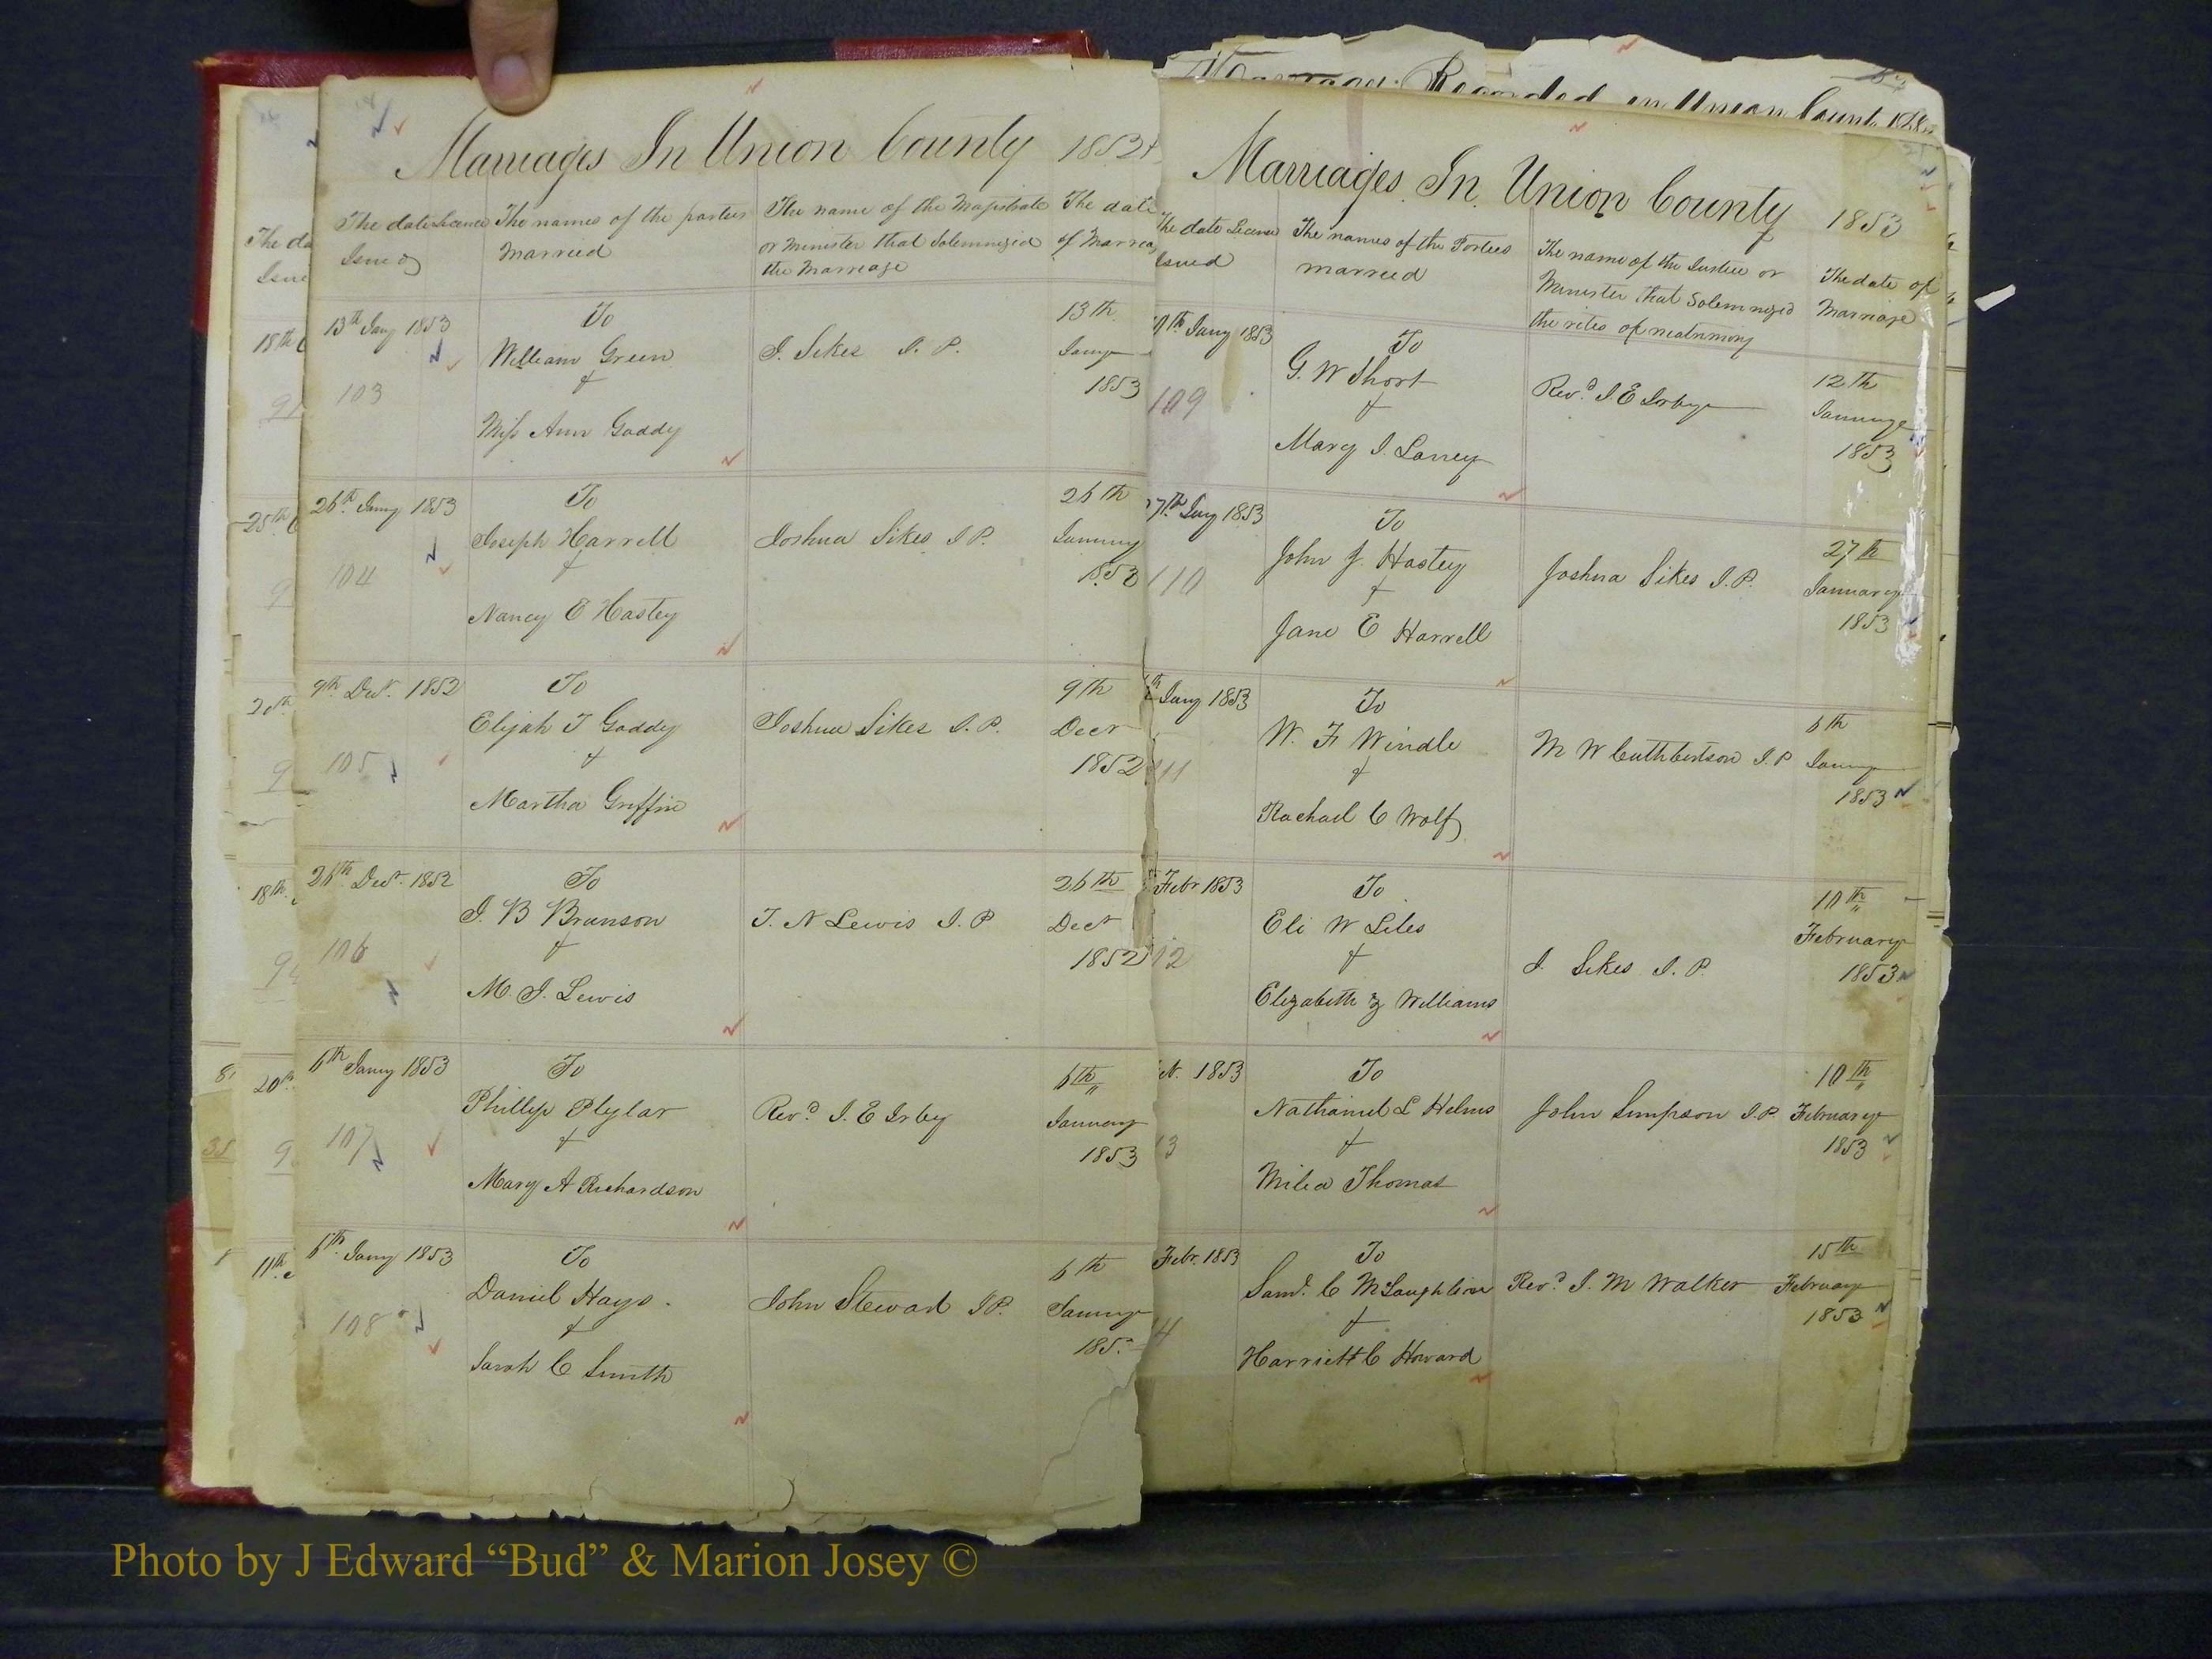 Union Co, NC Marriage Books 1, A-Z, 1851-1853 (11).JPG